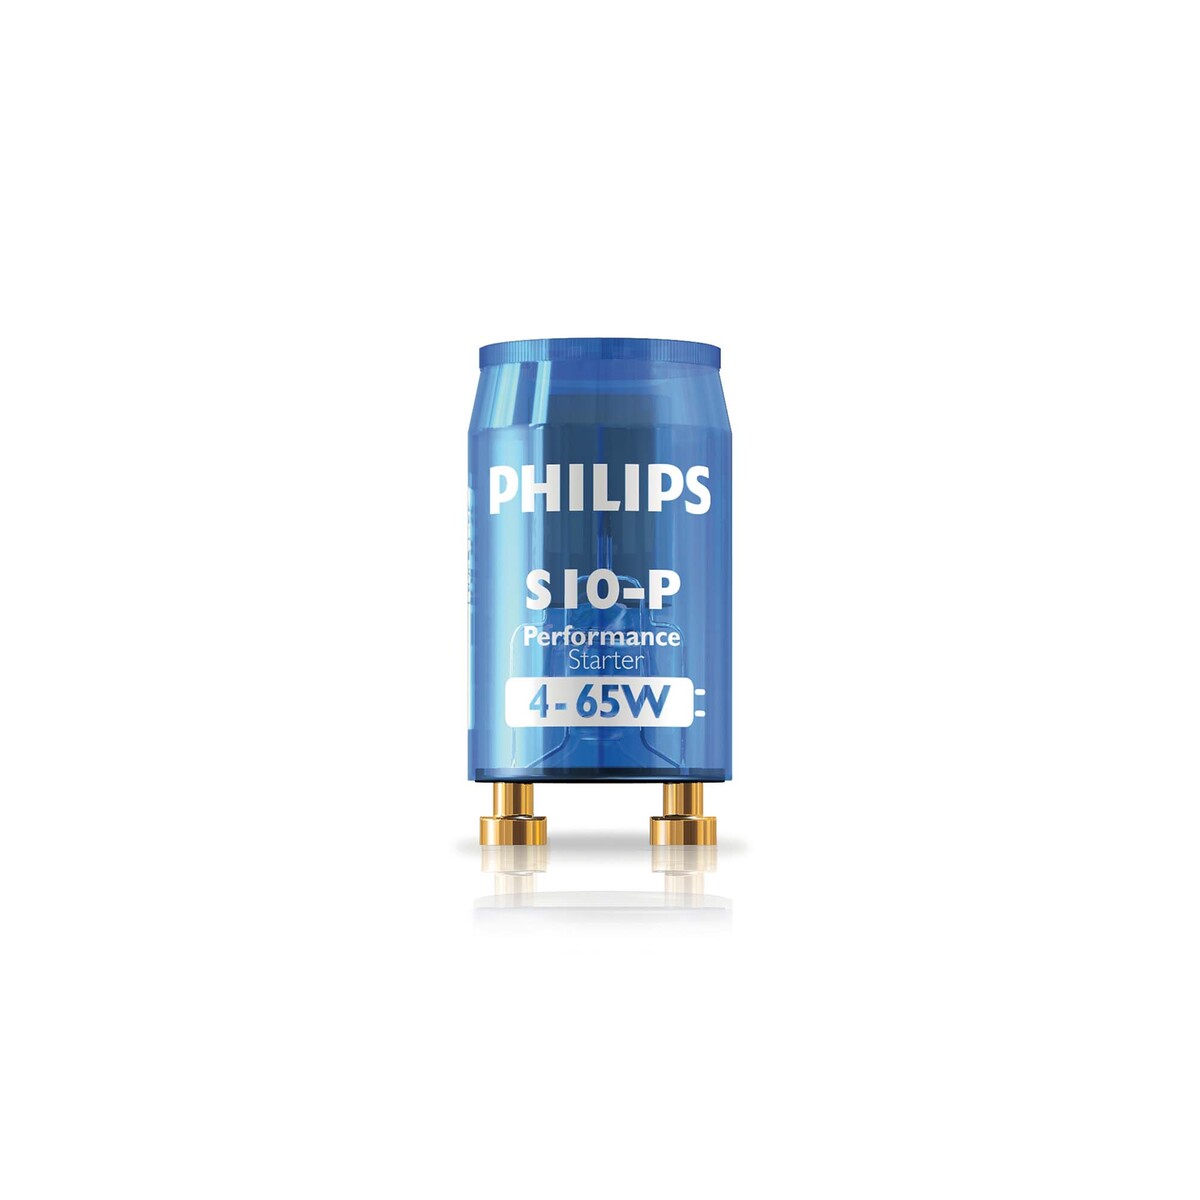 Philips Starter S-10